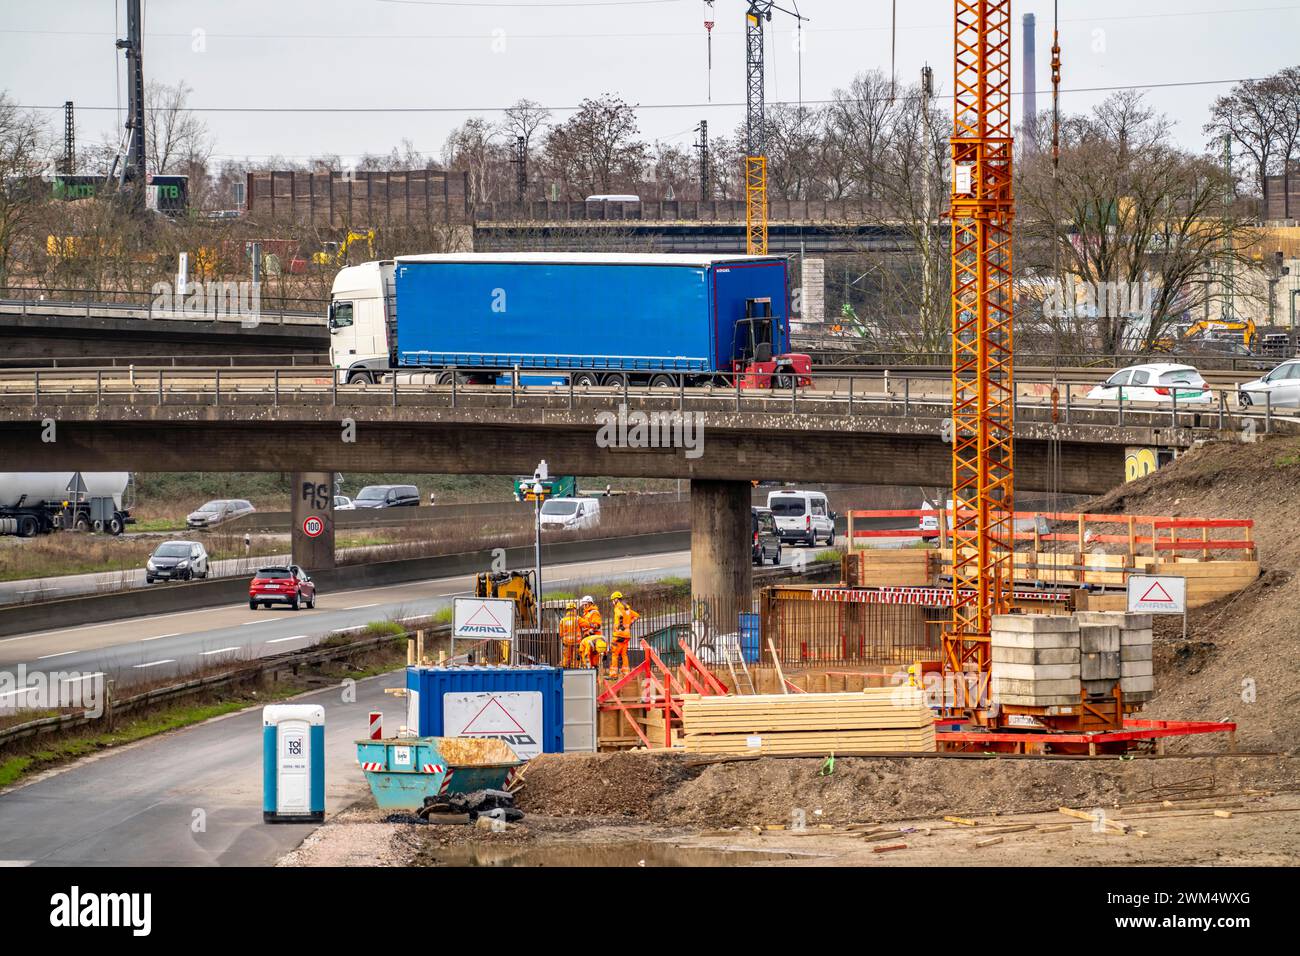 Autobahnkreuz Duisburg-Kaiserberg, kompletter Umbau und Neubau des Autobahnkreuzes A3 und A40, alle Brücken, Rampen, Fahrspuren werden erneuert Stockfoto